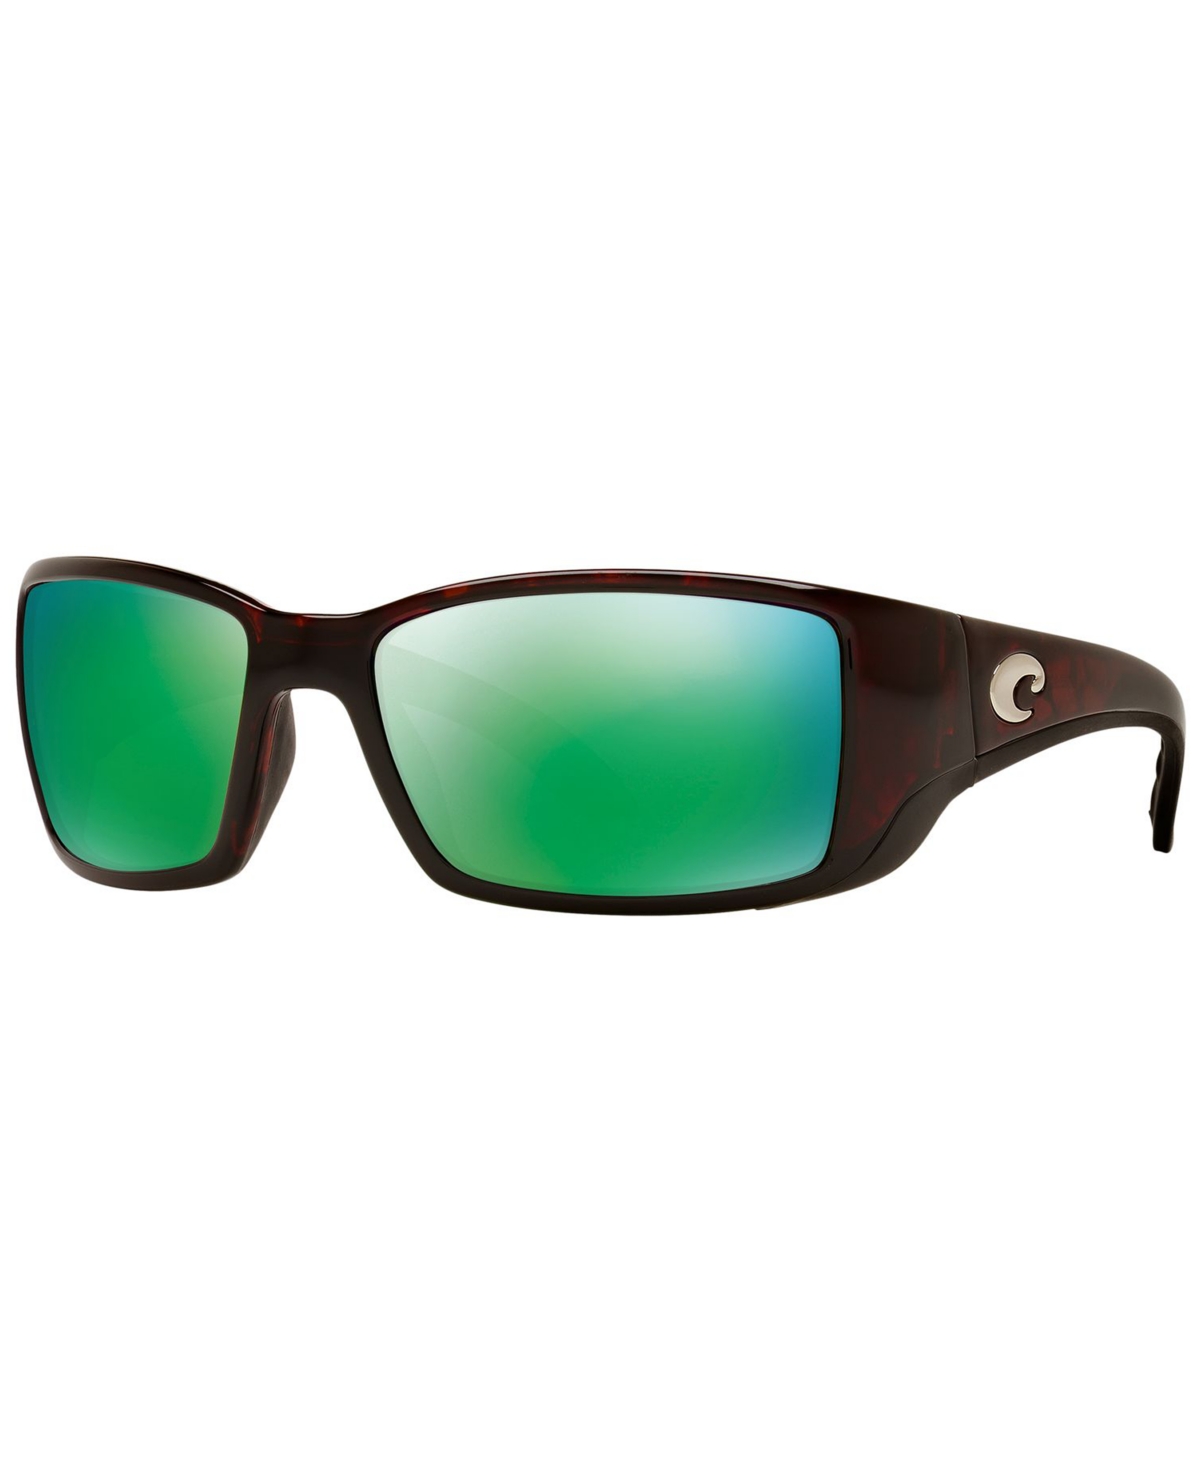 Costa Del Mar Polarized Sunglasses, Blackfin 06s000003 62p In Tortoise,green Mirror Polar